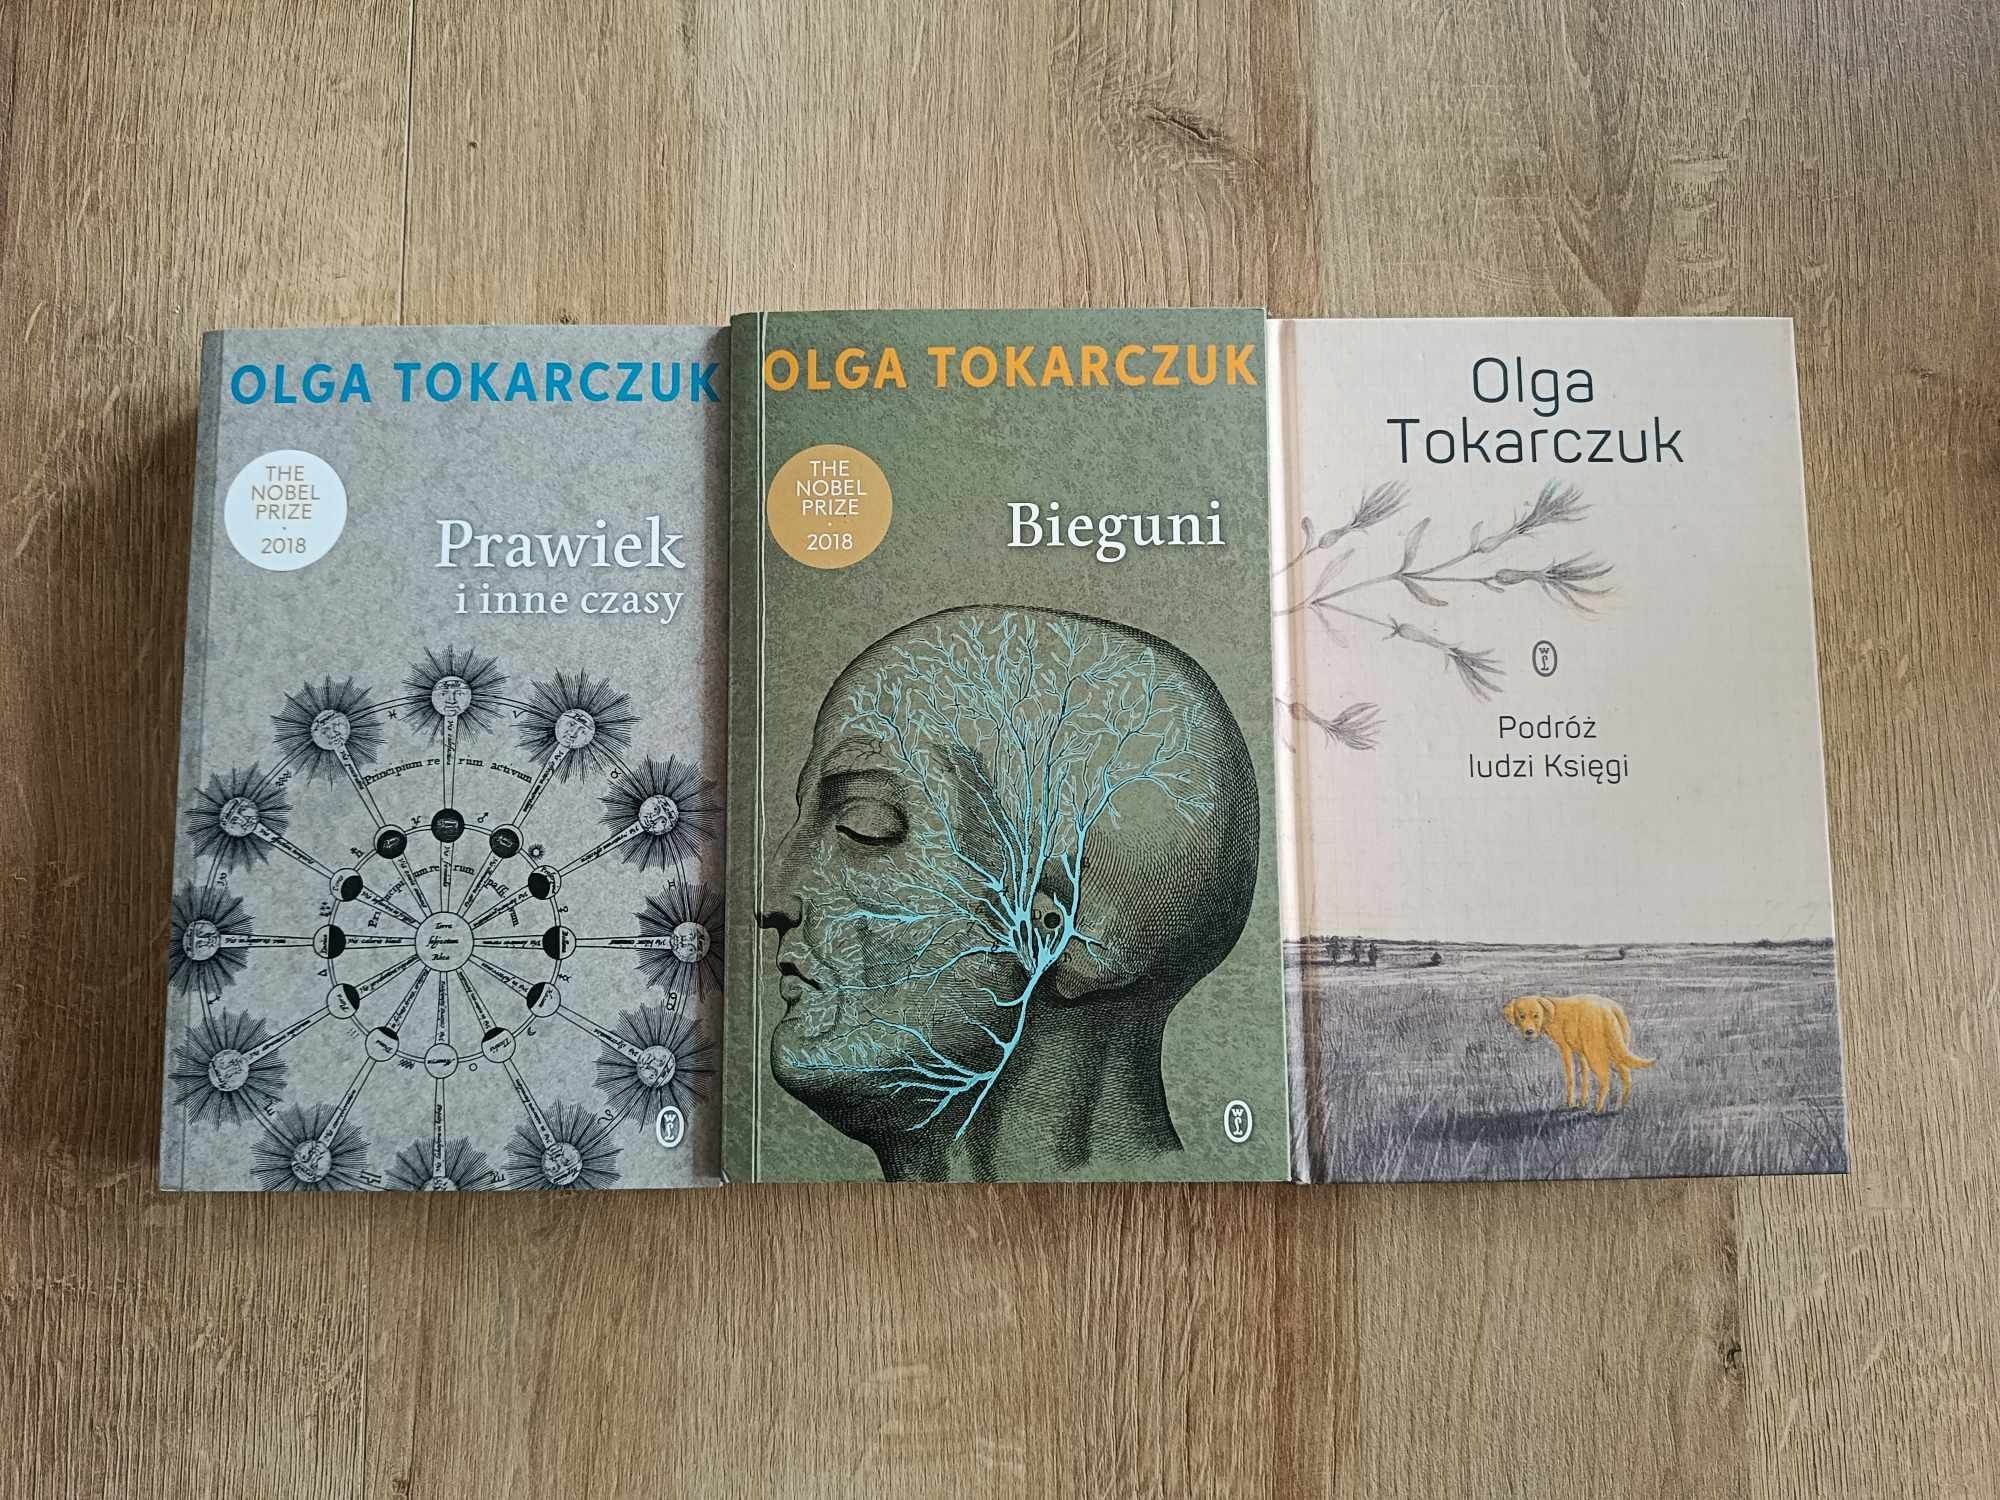 Olga Tokarczuk - Podróż ludzi ksiegi, bieguni, prawiek i inne czasy.